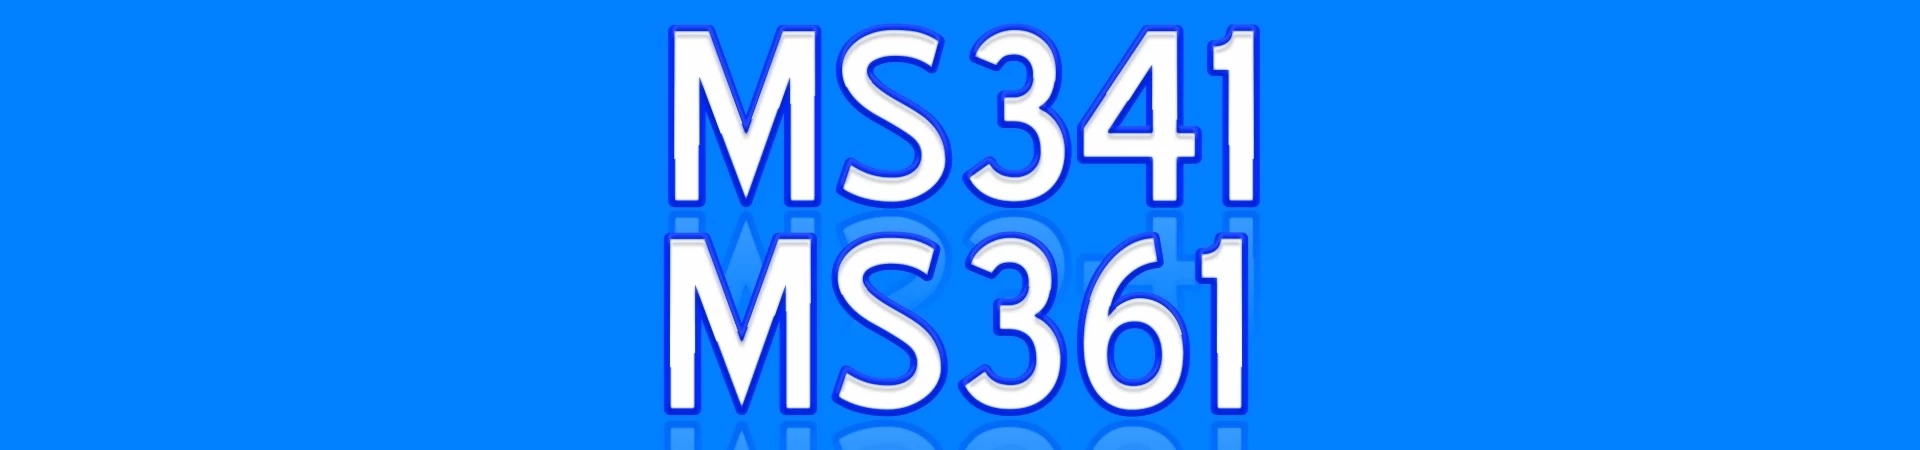 MS341 MS361